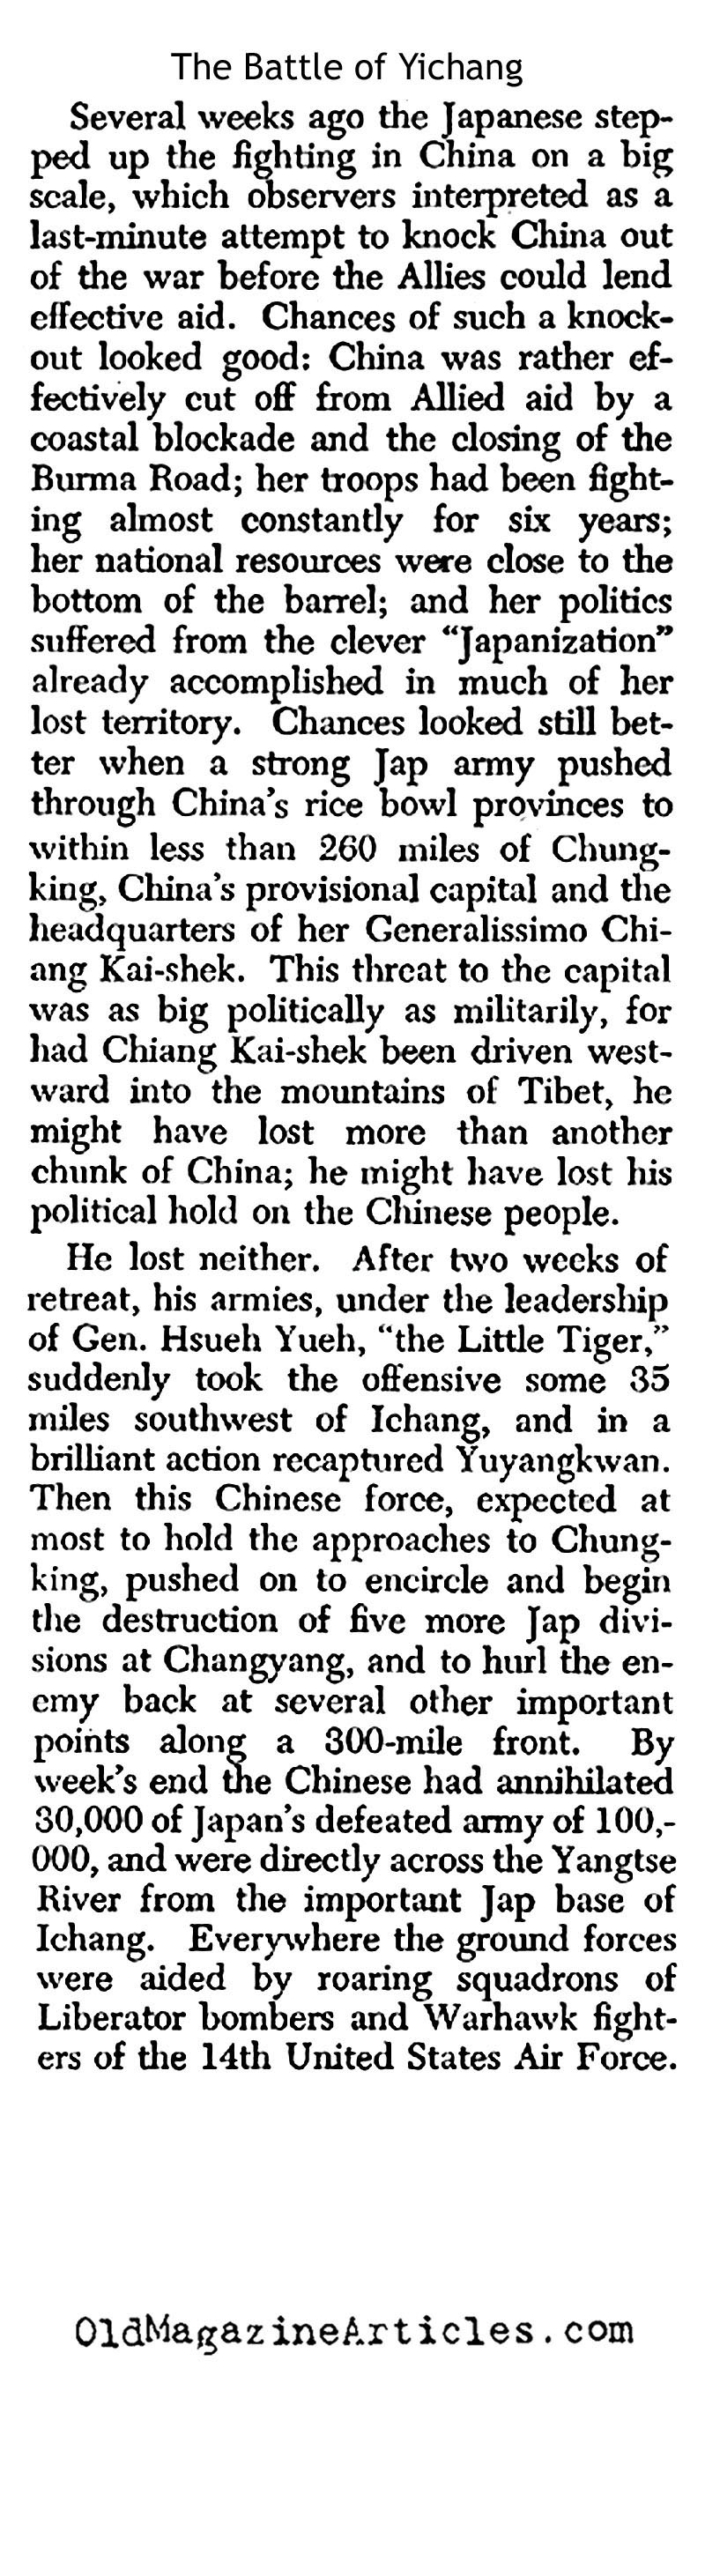 The Battle of  Yichang (Pathfinder Magazine, 1943)